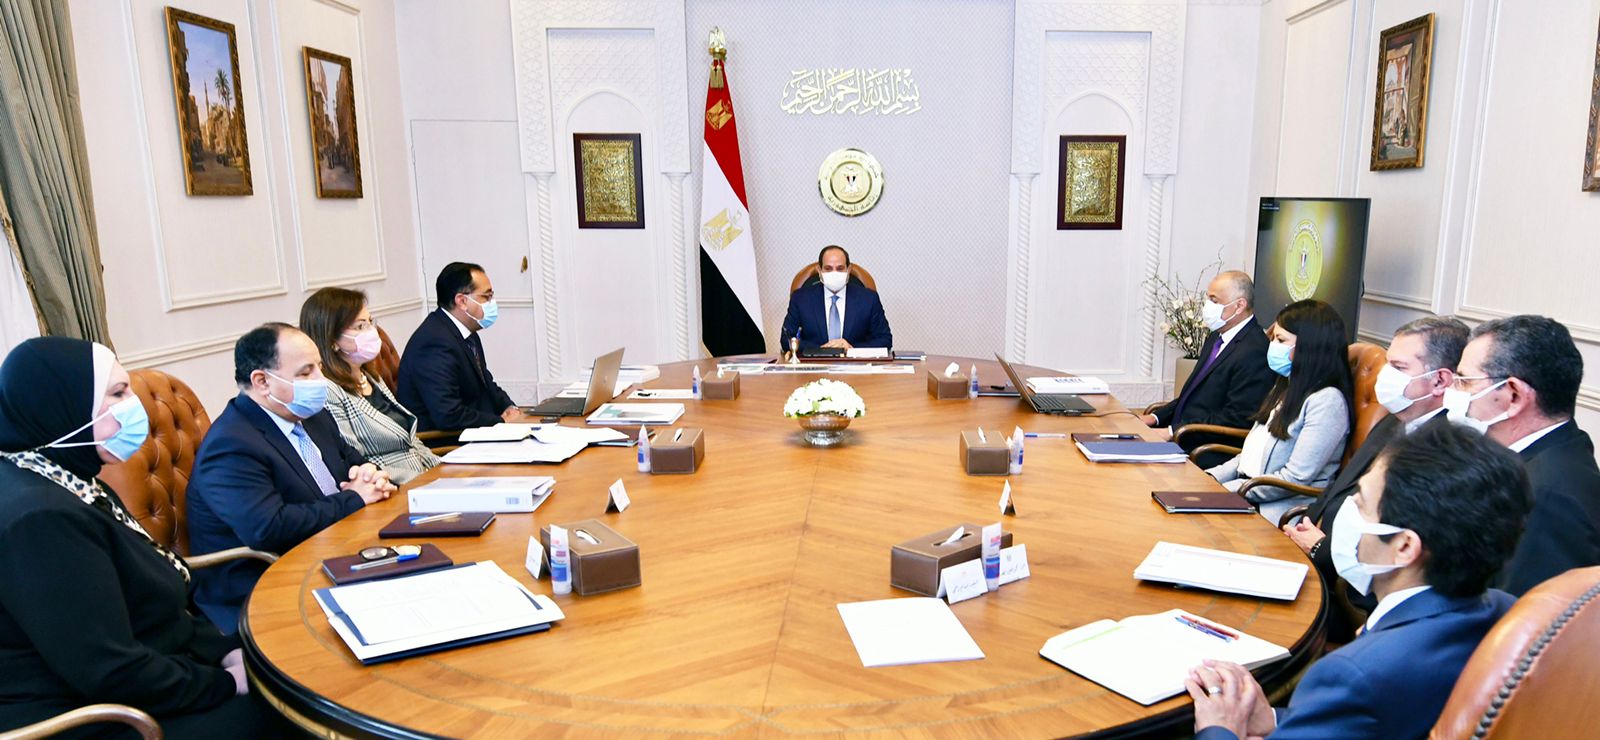 بسام راضي الرئيس السيسي يجتمع مع المجموعة الوزارية الاقتصادية